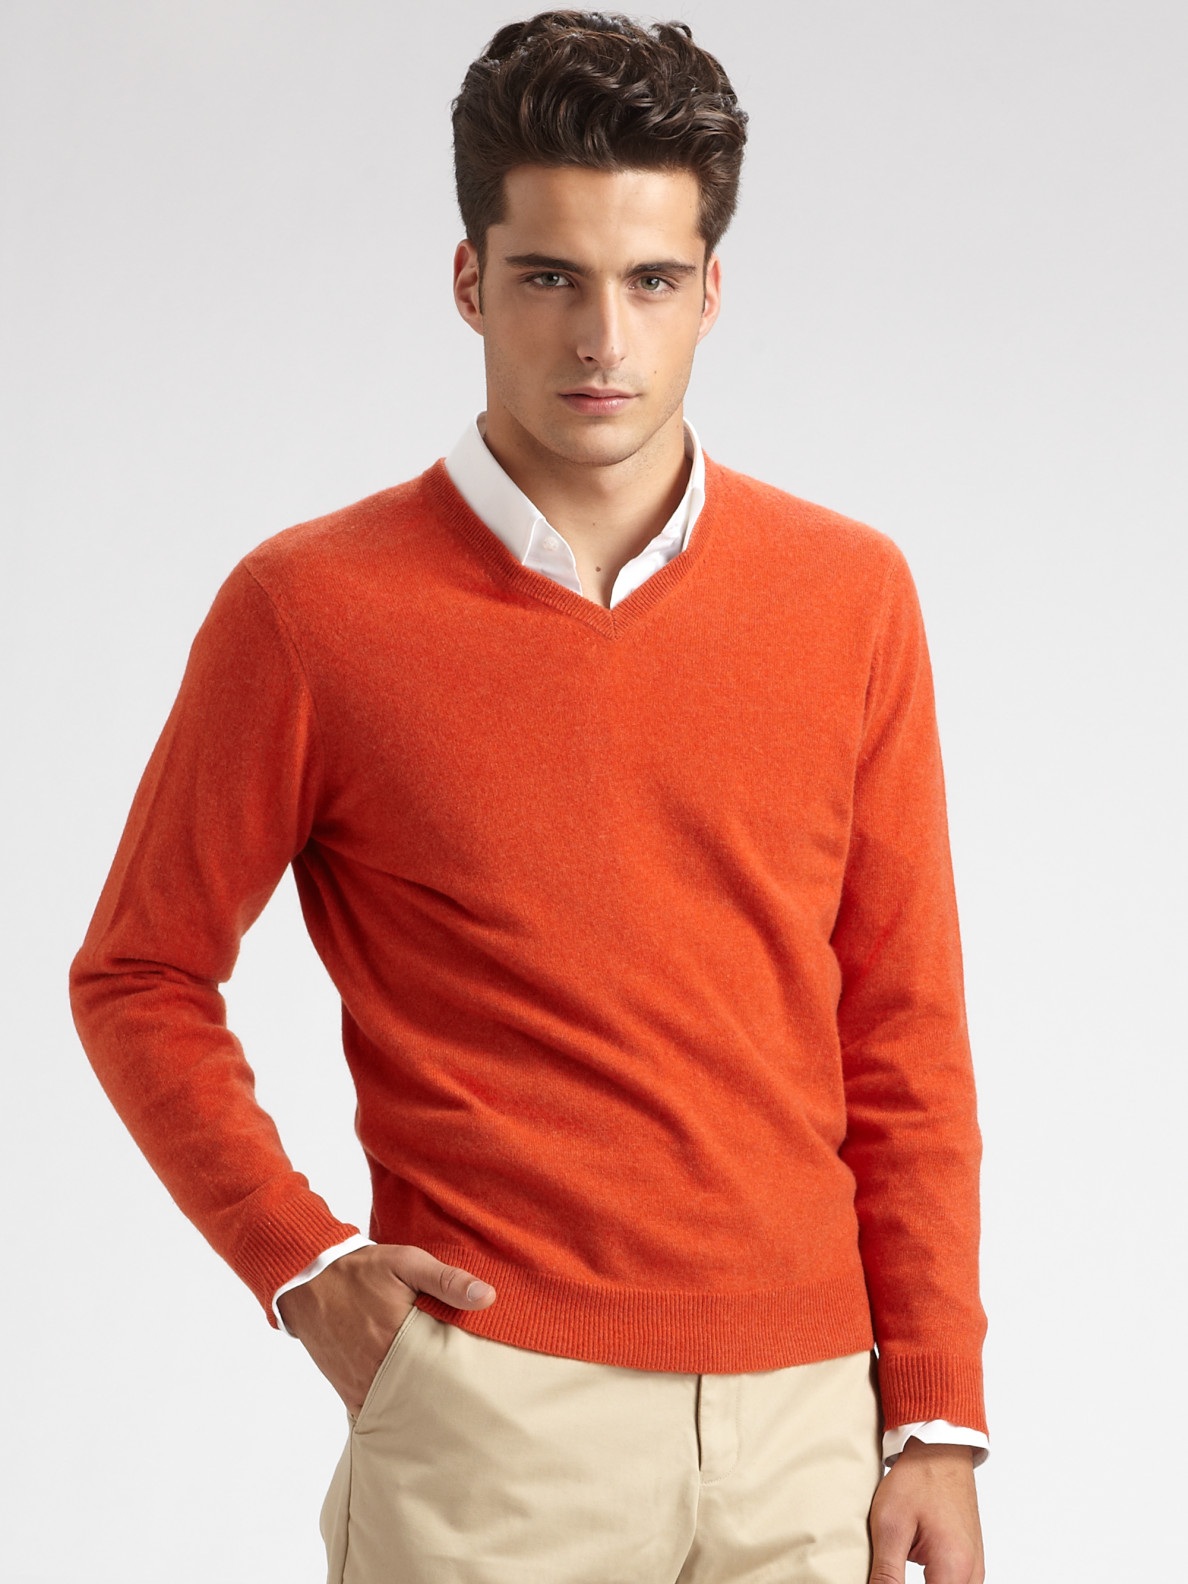 Saks Fifth Avenue V-neck Cashmere Sweater in Orange for Men - Lyst